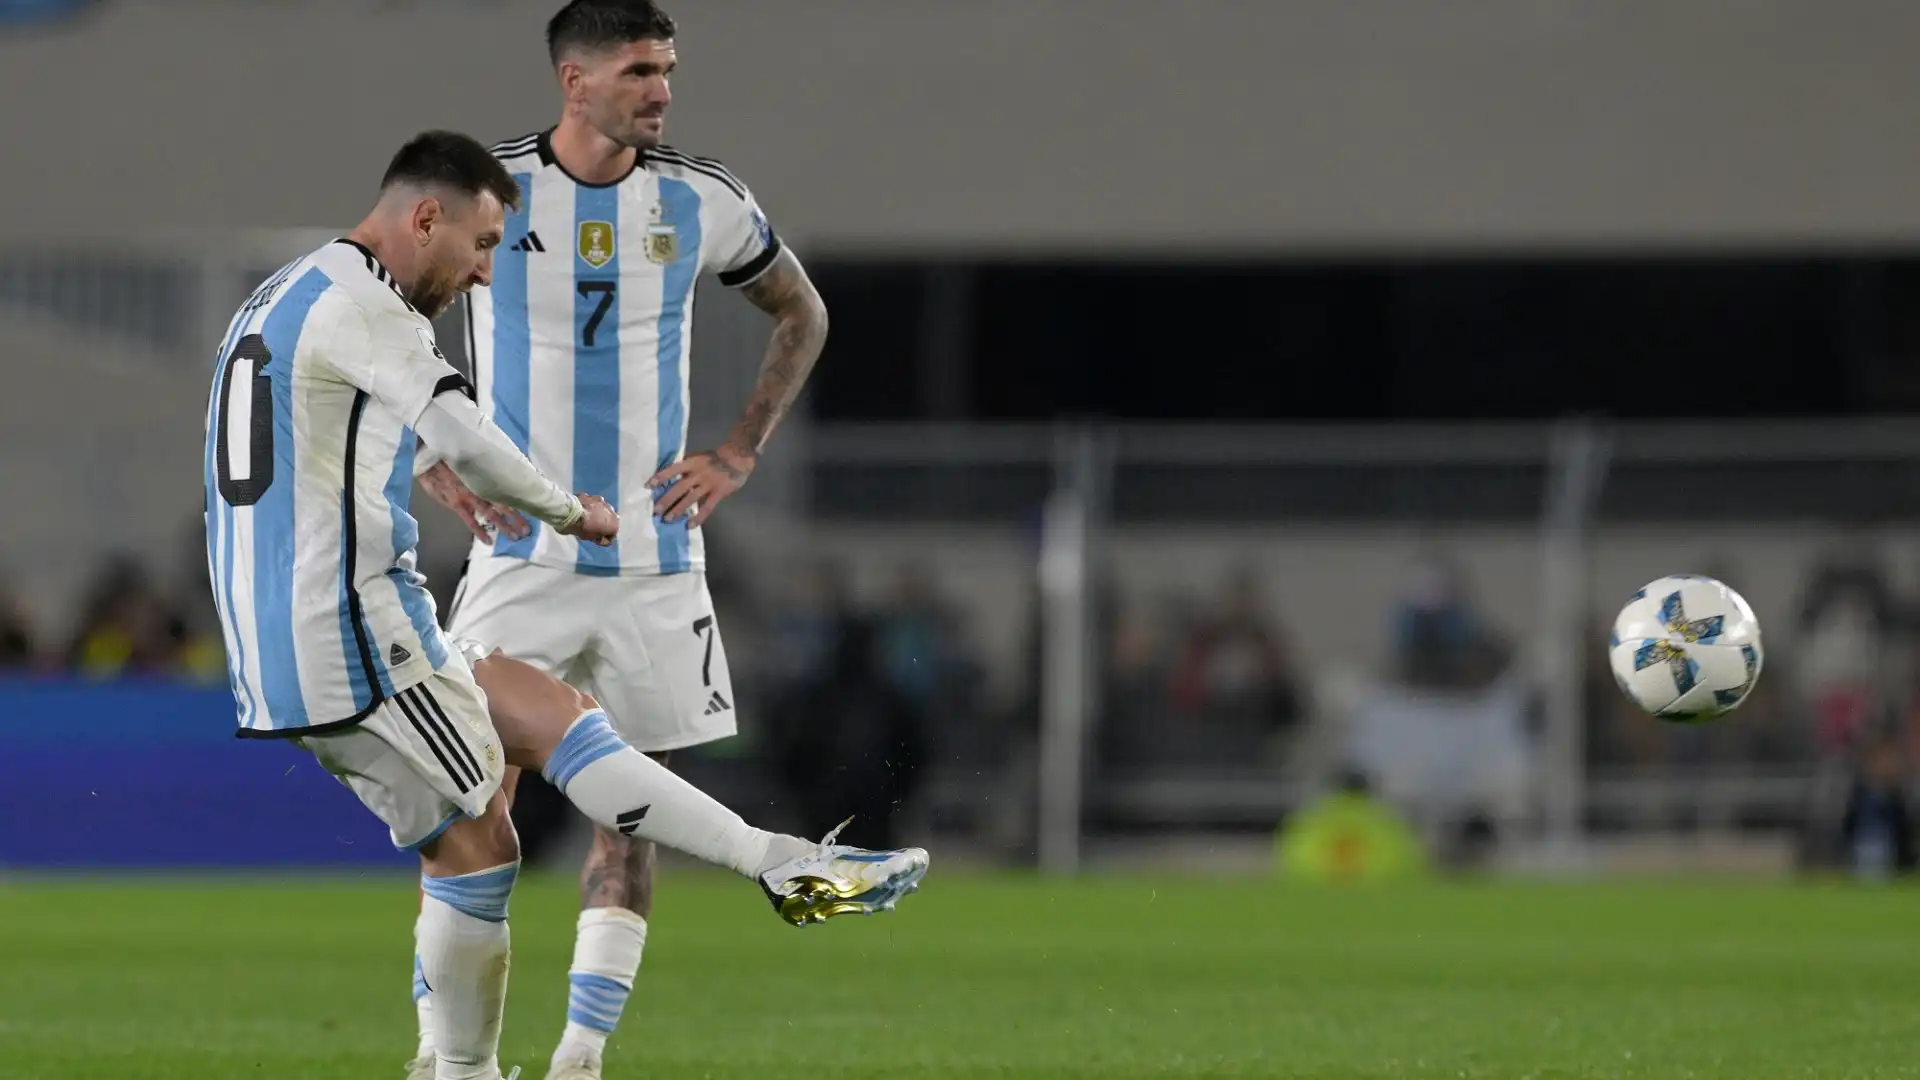 Messi con uno strepitoso gol su punizione ha incantato gli 83mila spettatori accorsi allo Stadio Monumental di Buenos Aires